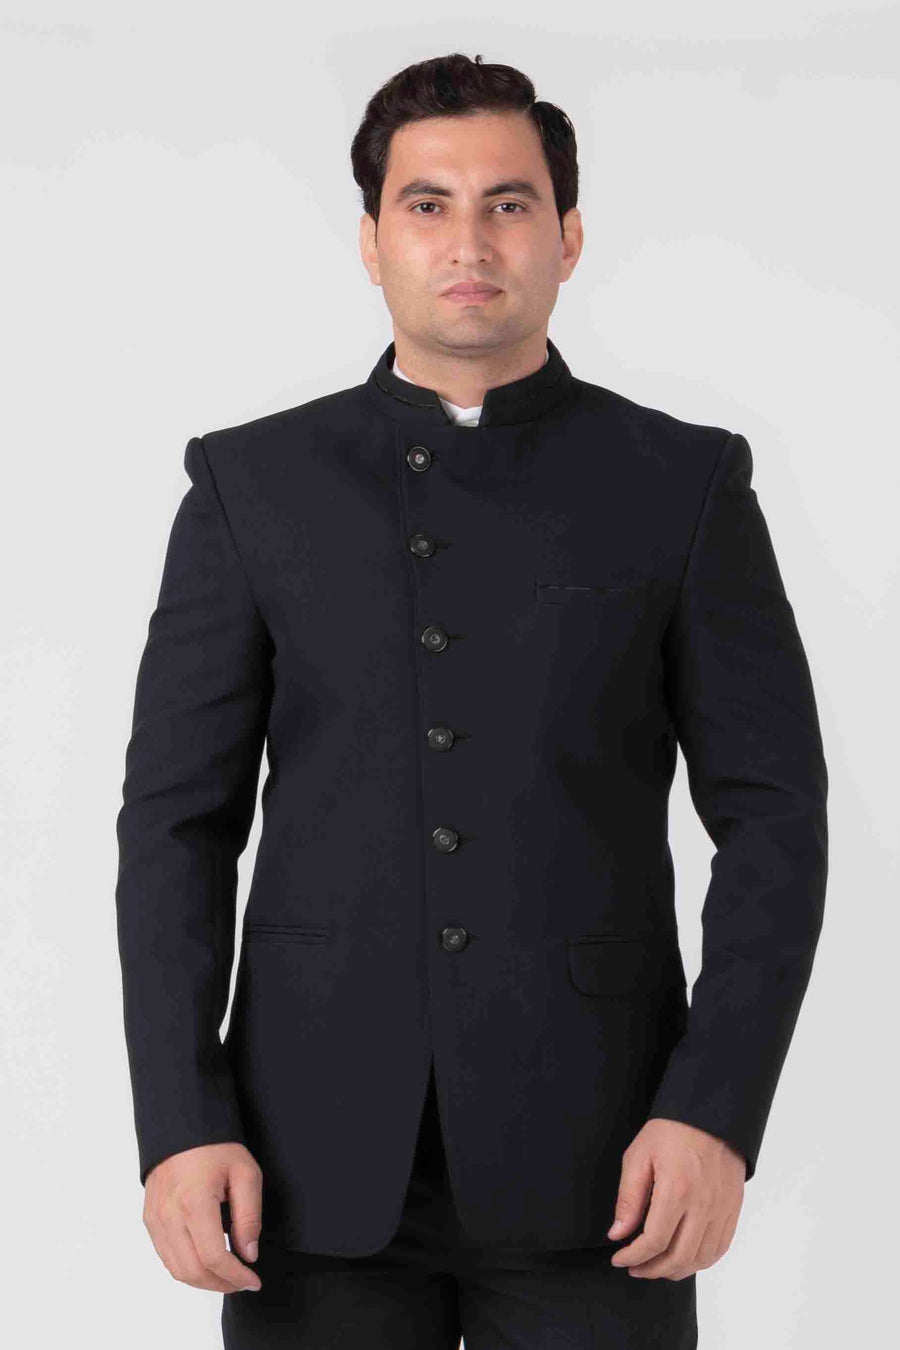 MLS Angrakha Johpuri Suit